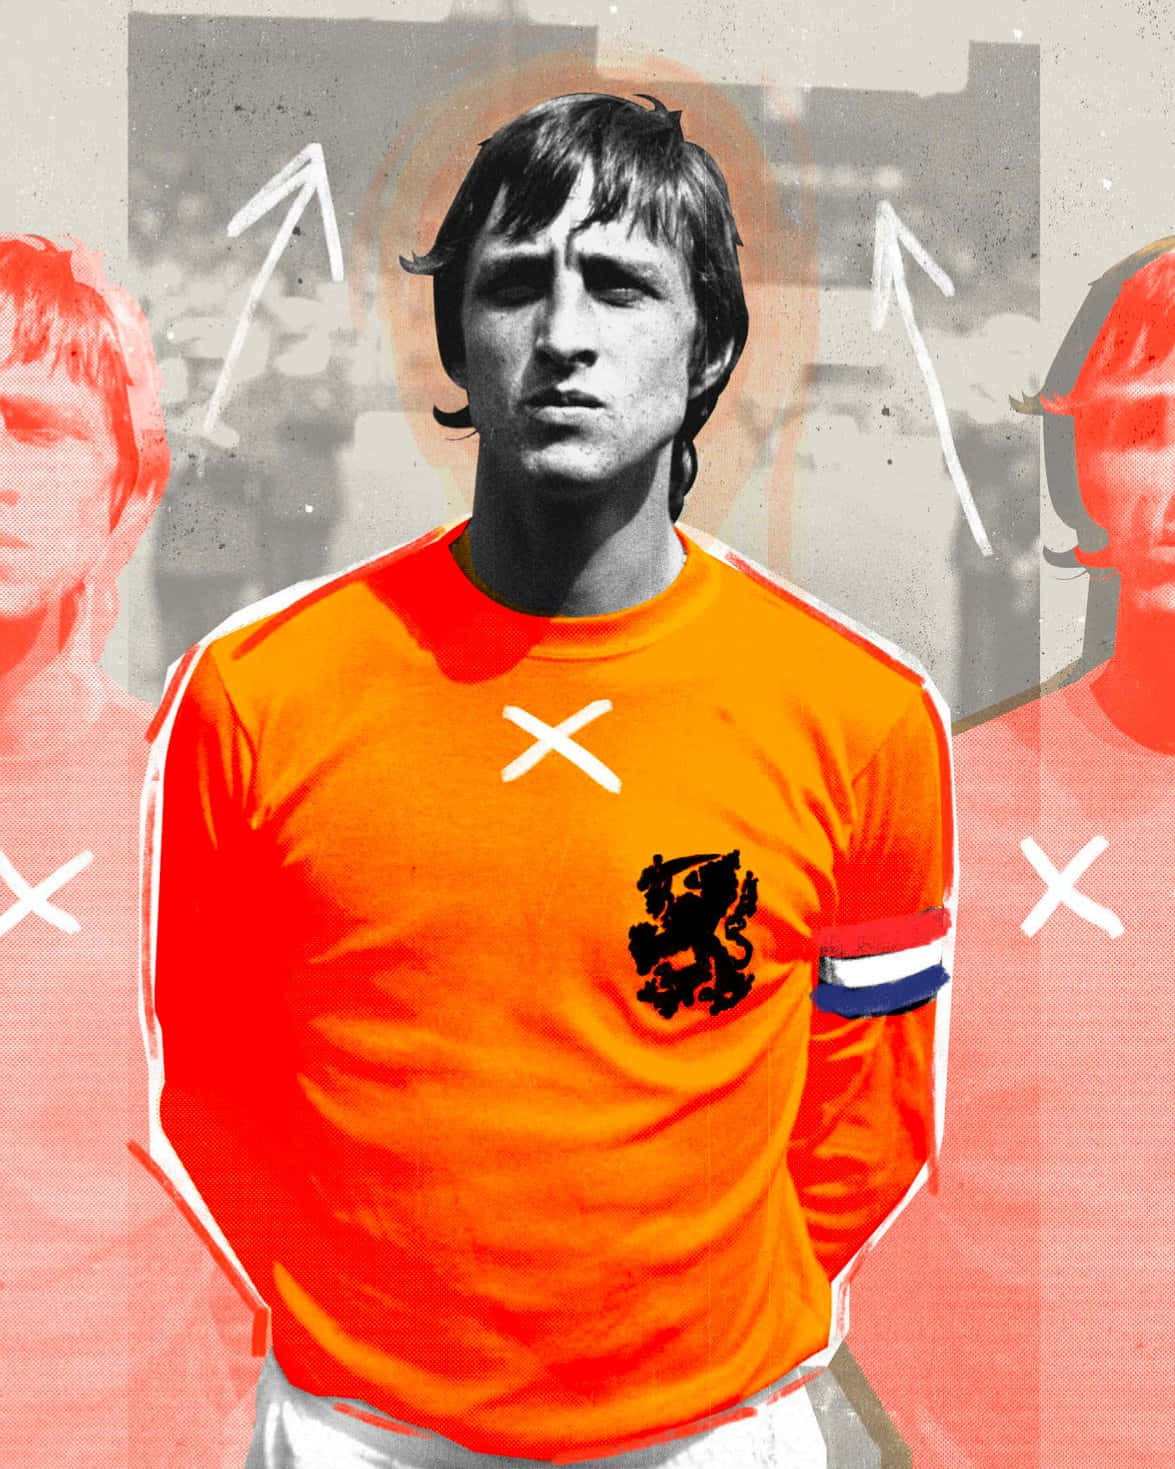 Hollandsk Fodboldspiller Johan Cruyff Grafisk Kunst Vægbillede Wallpaper